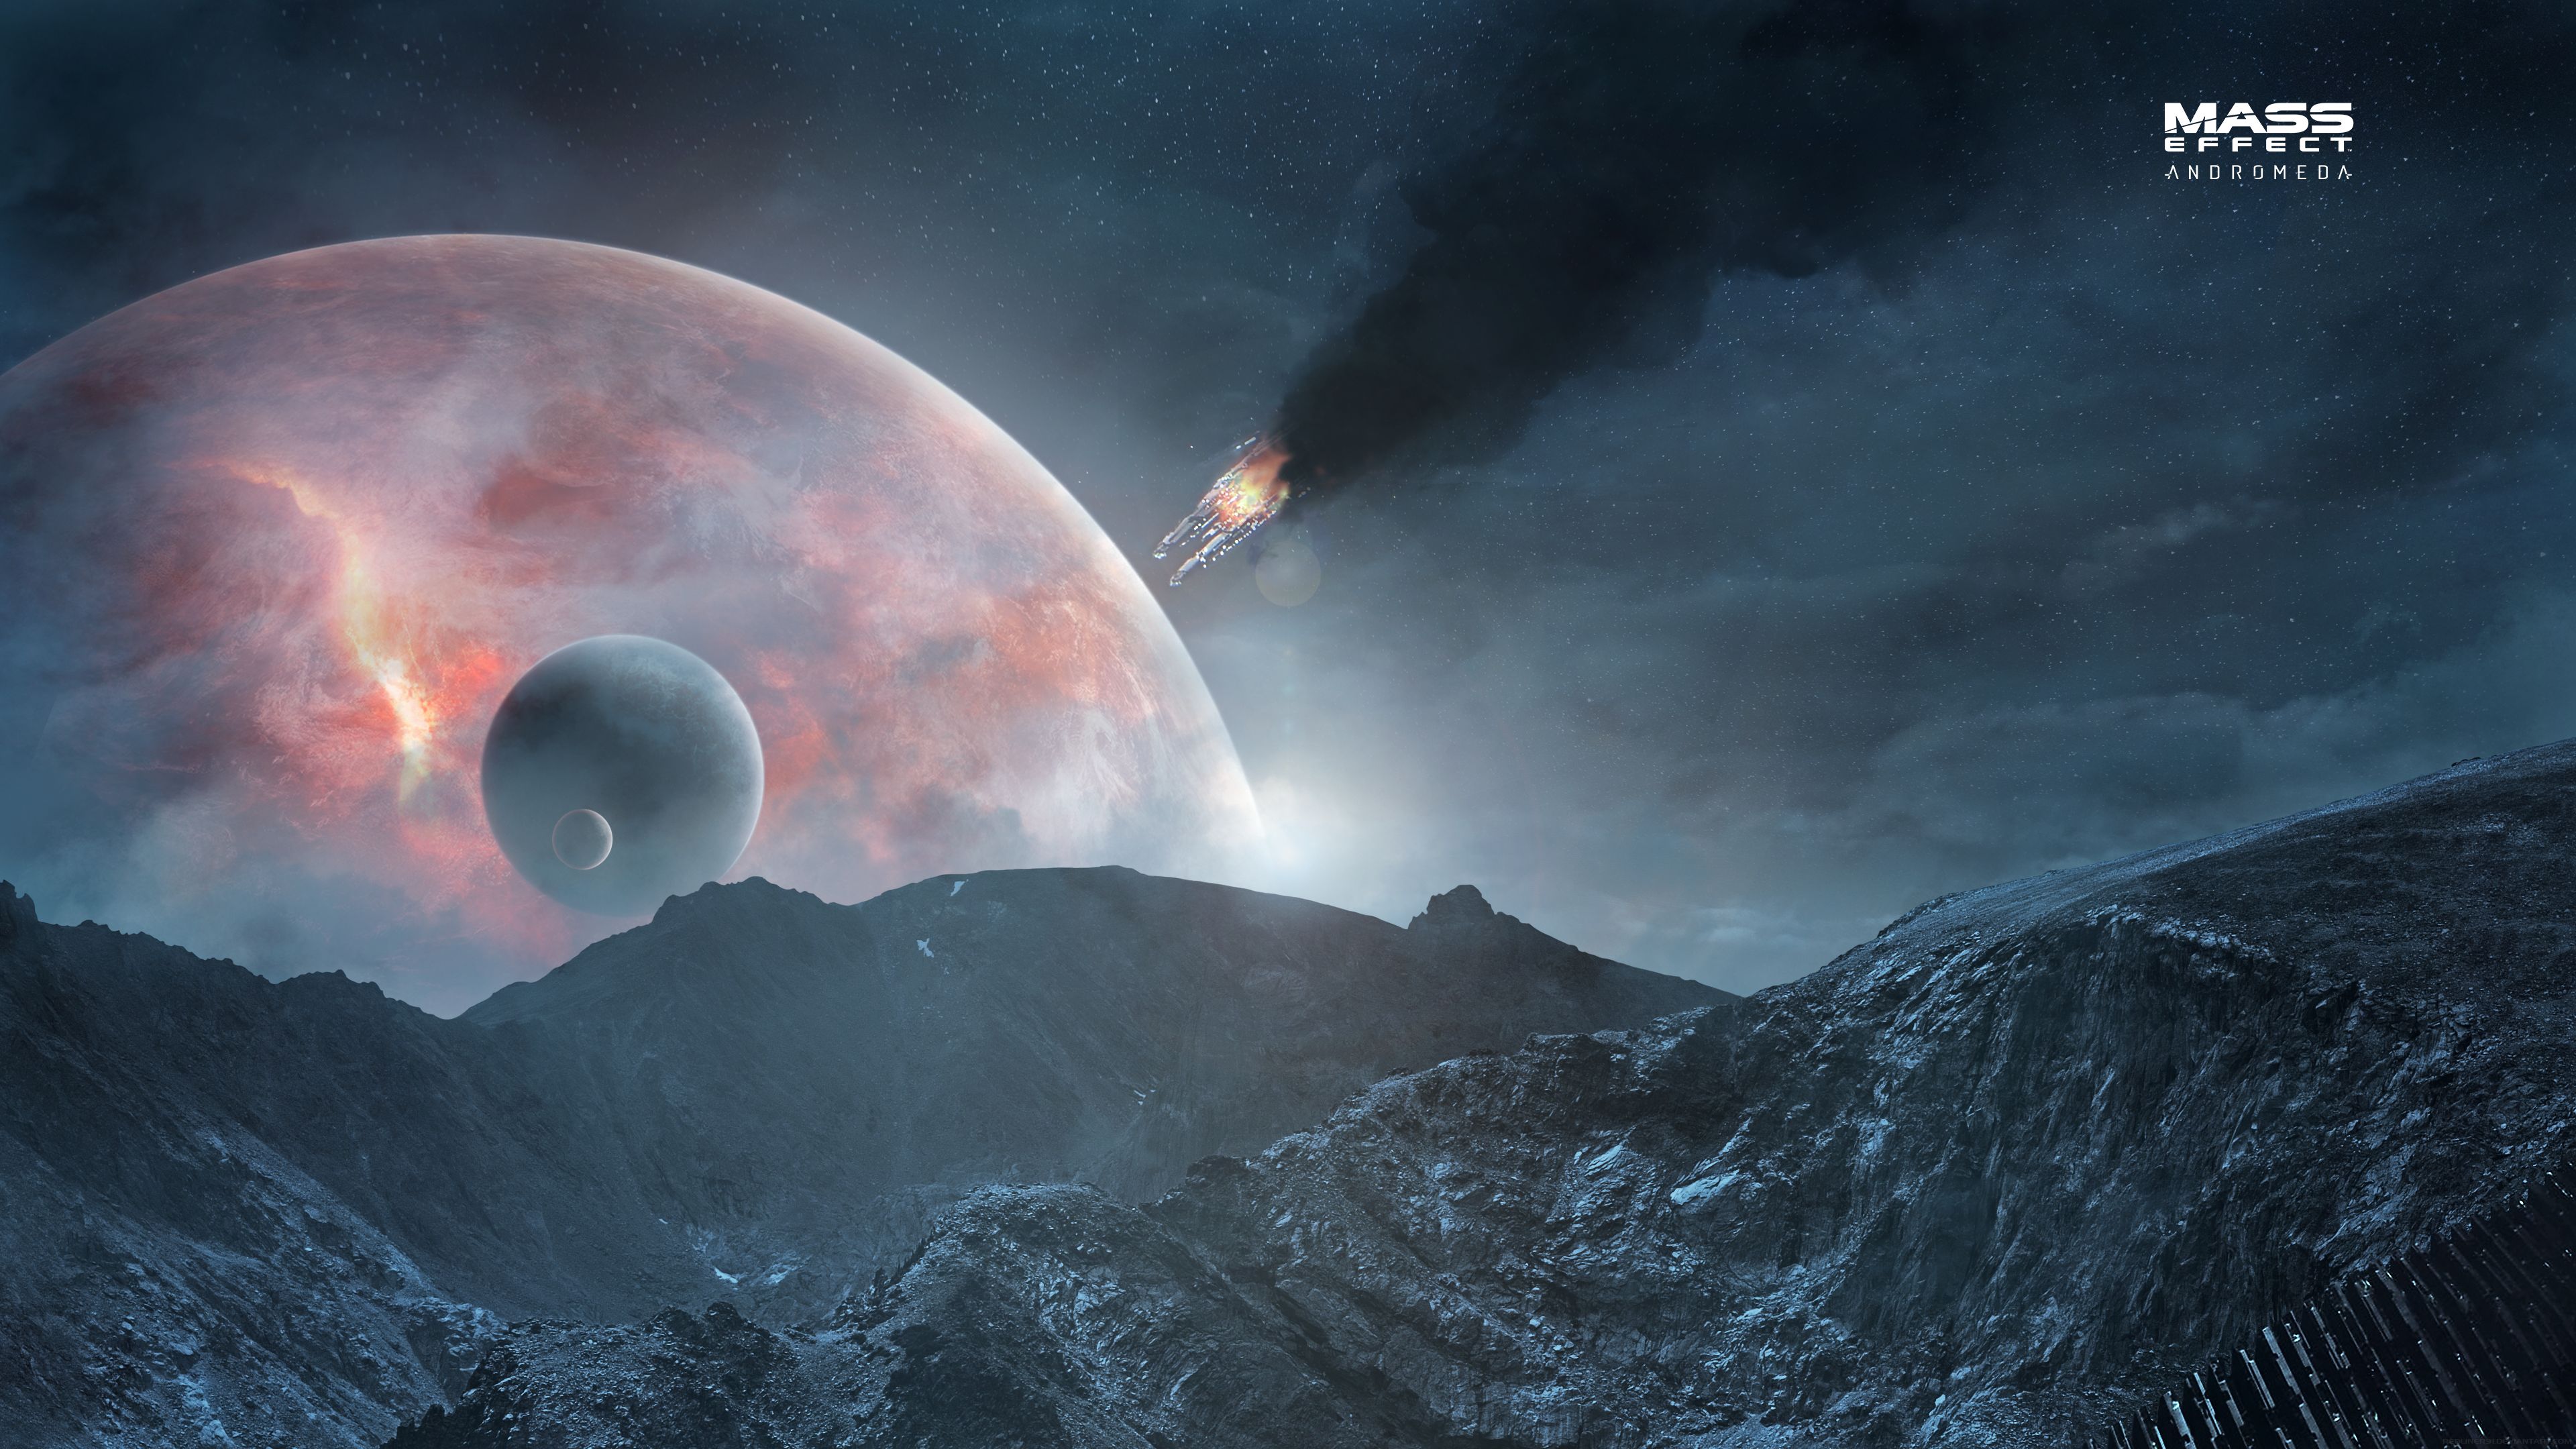 Descarga gratuita de fondo de pantalla para móvil de Montaña, Espacio, Planeta, Ciencia Ficción, Astronave, Videojuego, Efecto Masivo, Mass Effect: Andromeda.